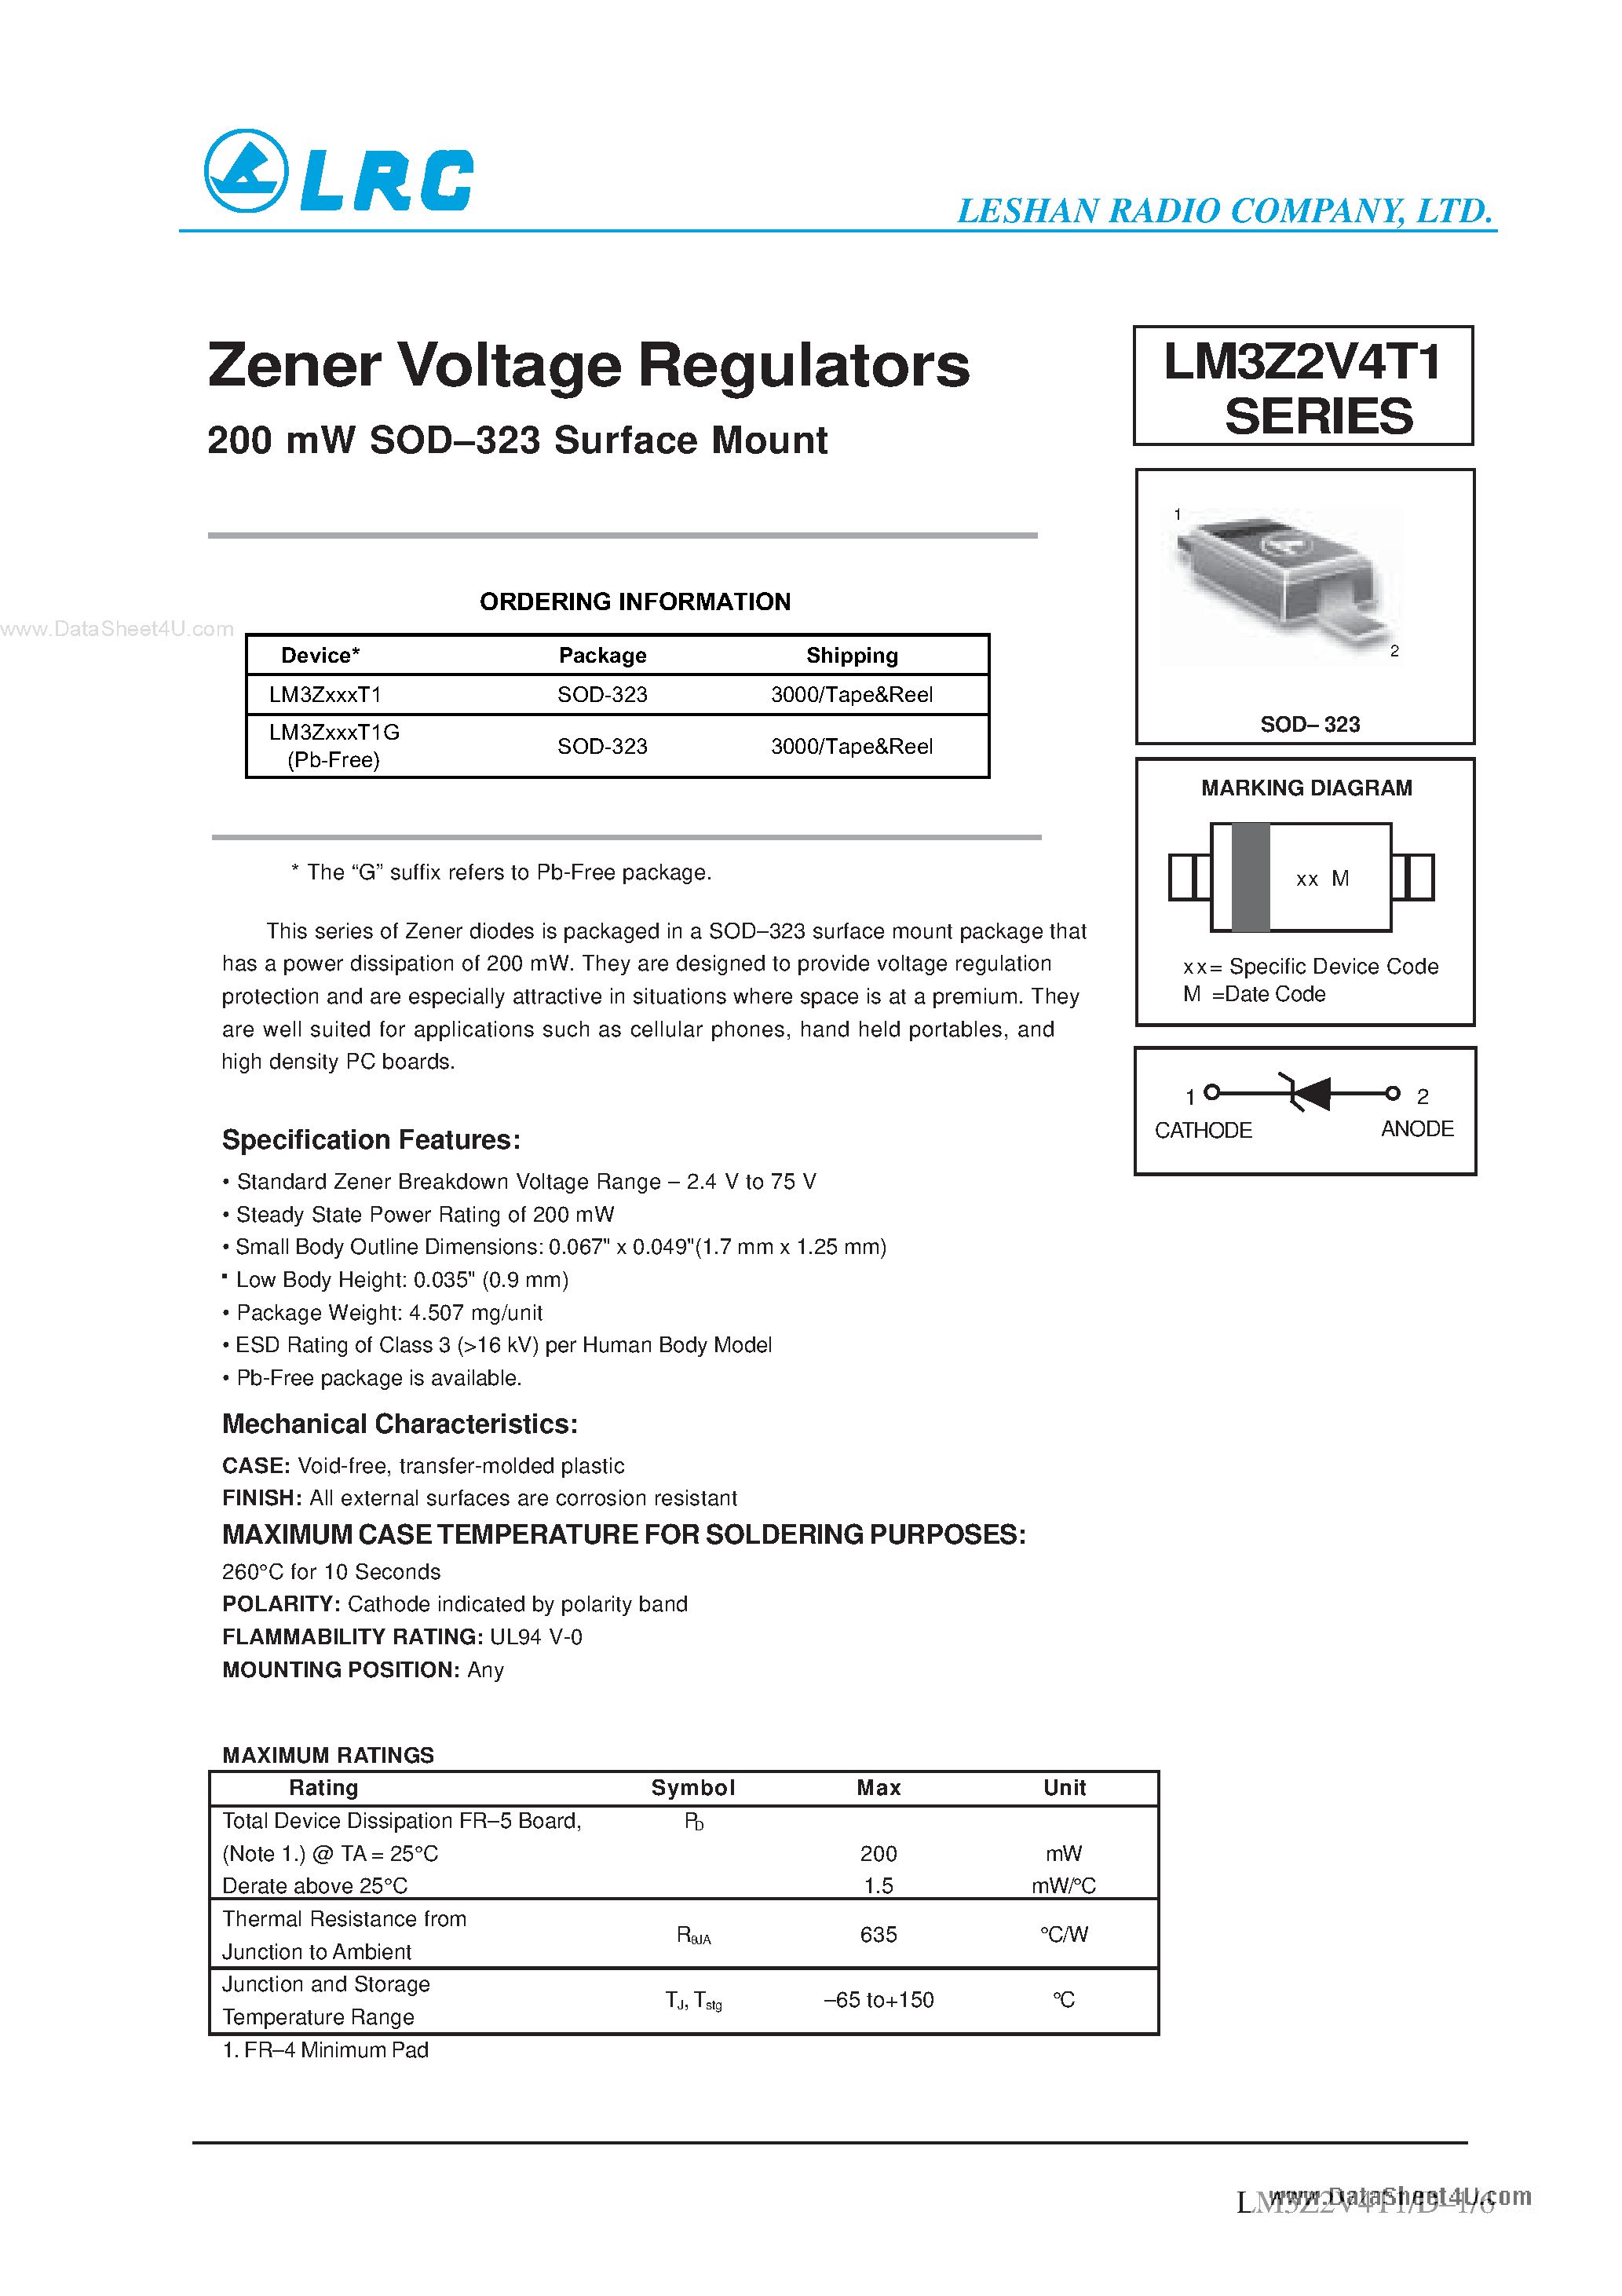 Даташит LM3Z2V4T1-Zener Voltage Regulators страница 1